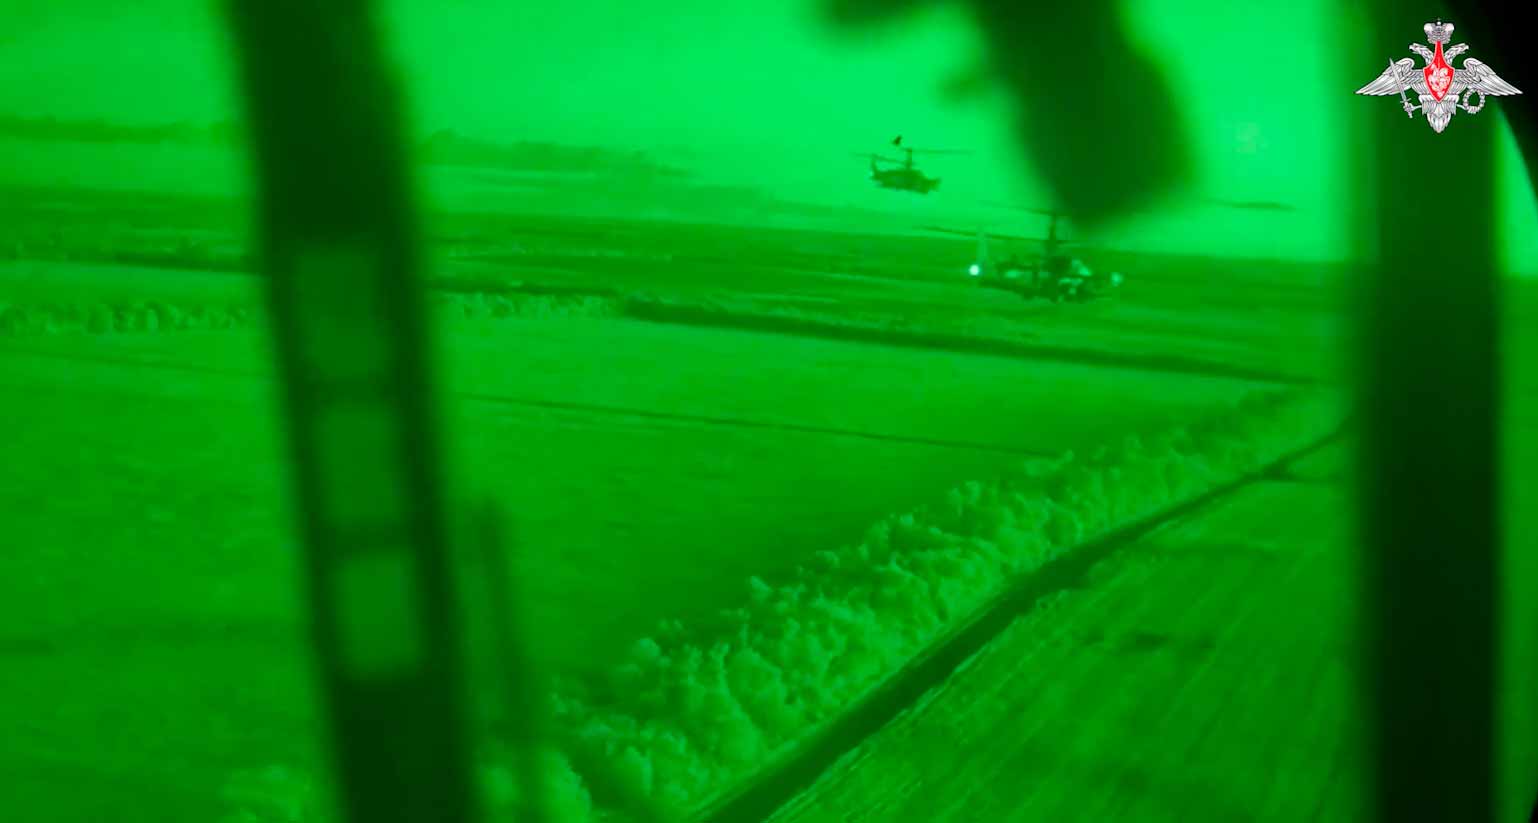 비디오는 Ka-52 공격 헬리콥터의 야간 작전을 보여줍니다. 출처, 사진 및 비디오: Telegram t.me/mod_russia